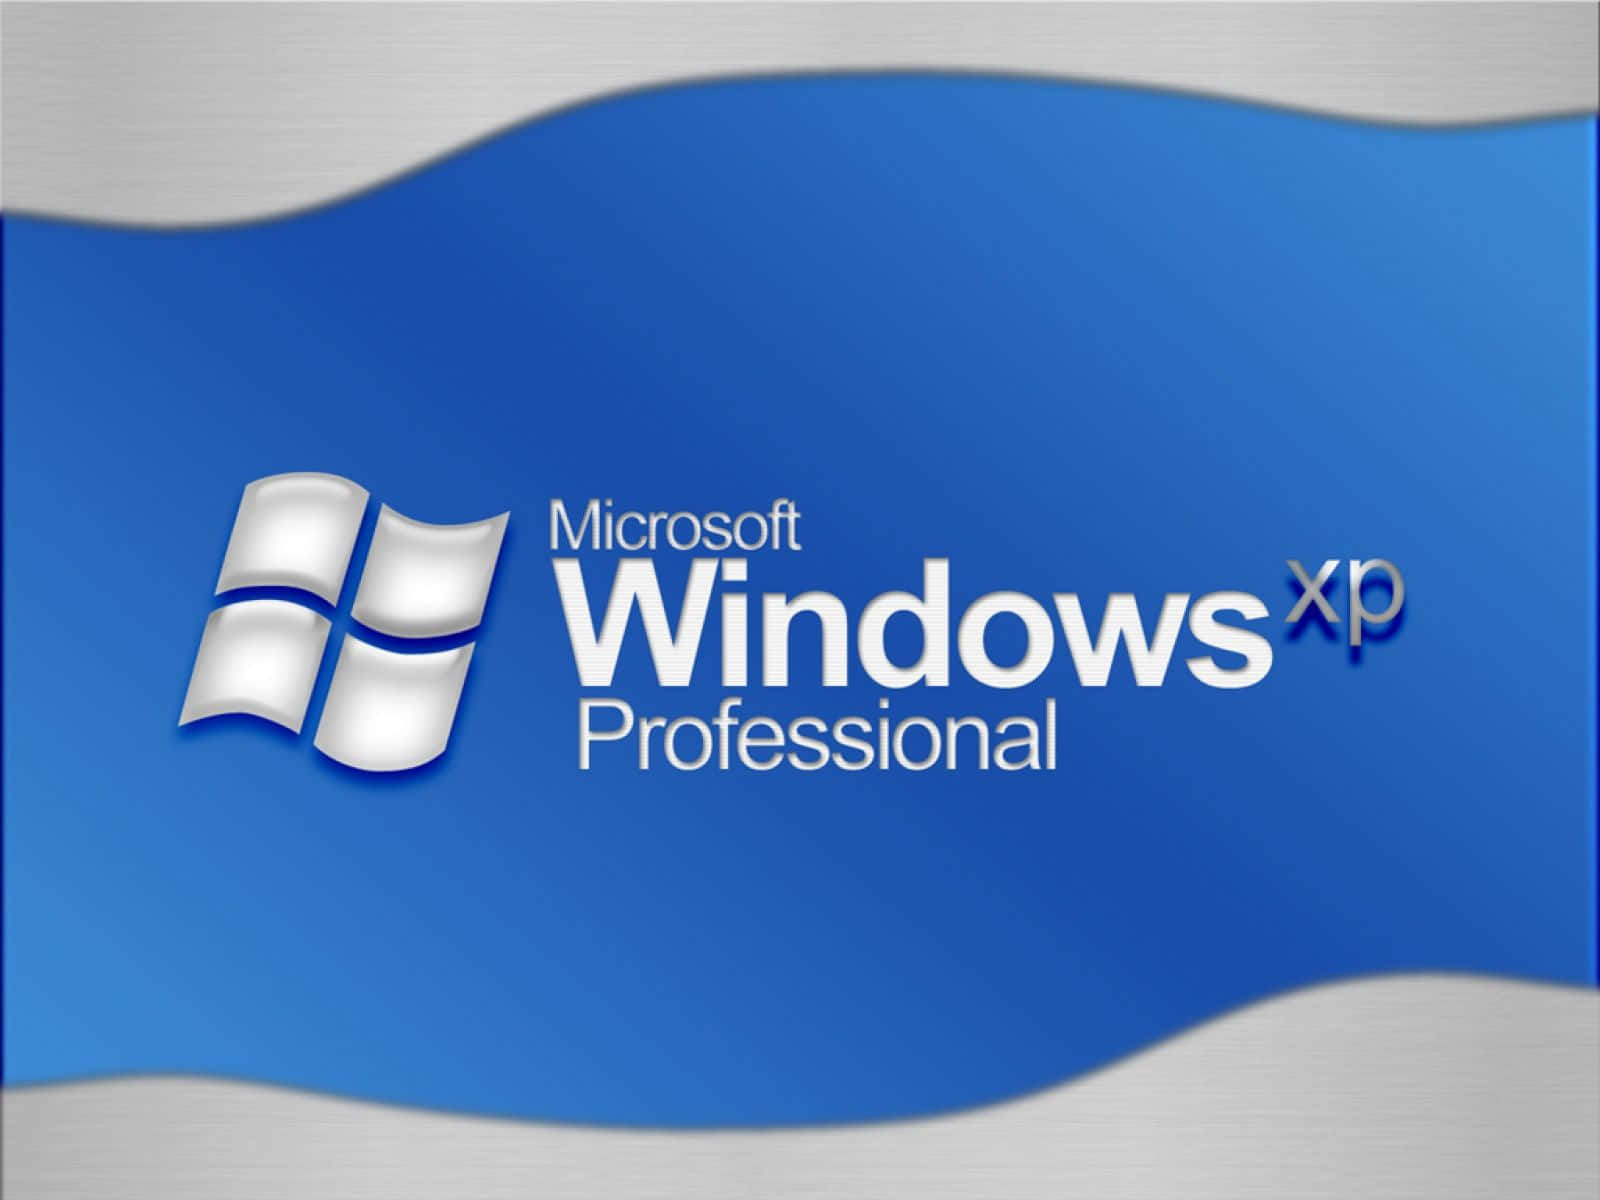 Udsigt til det smukke Windows XP-operativsystem.